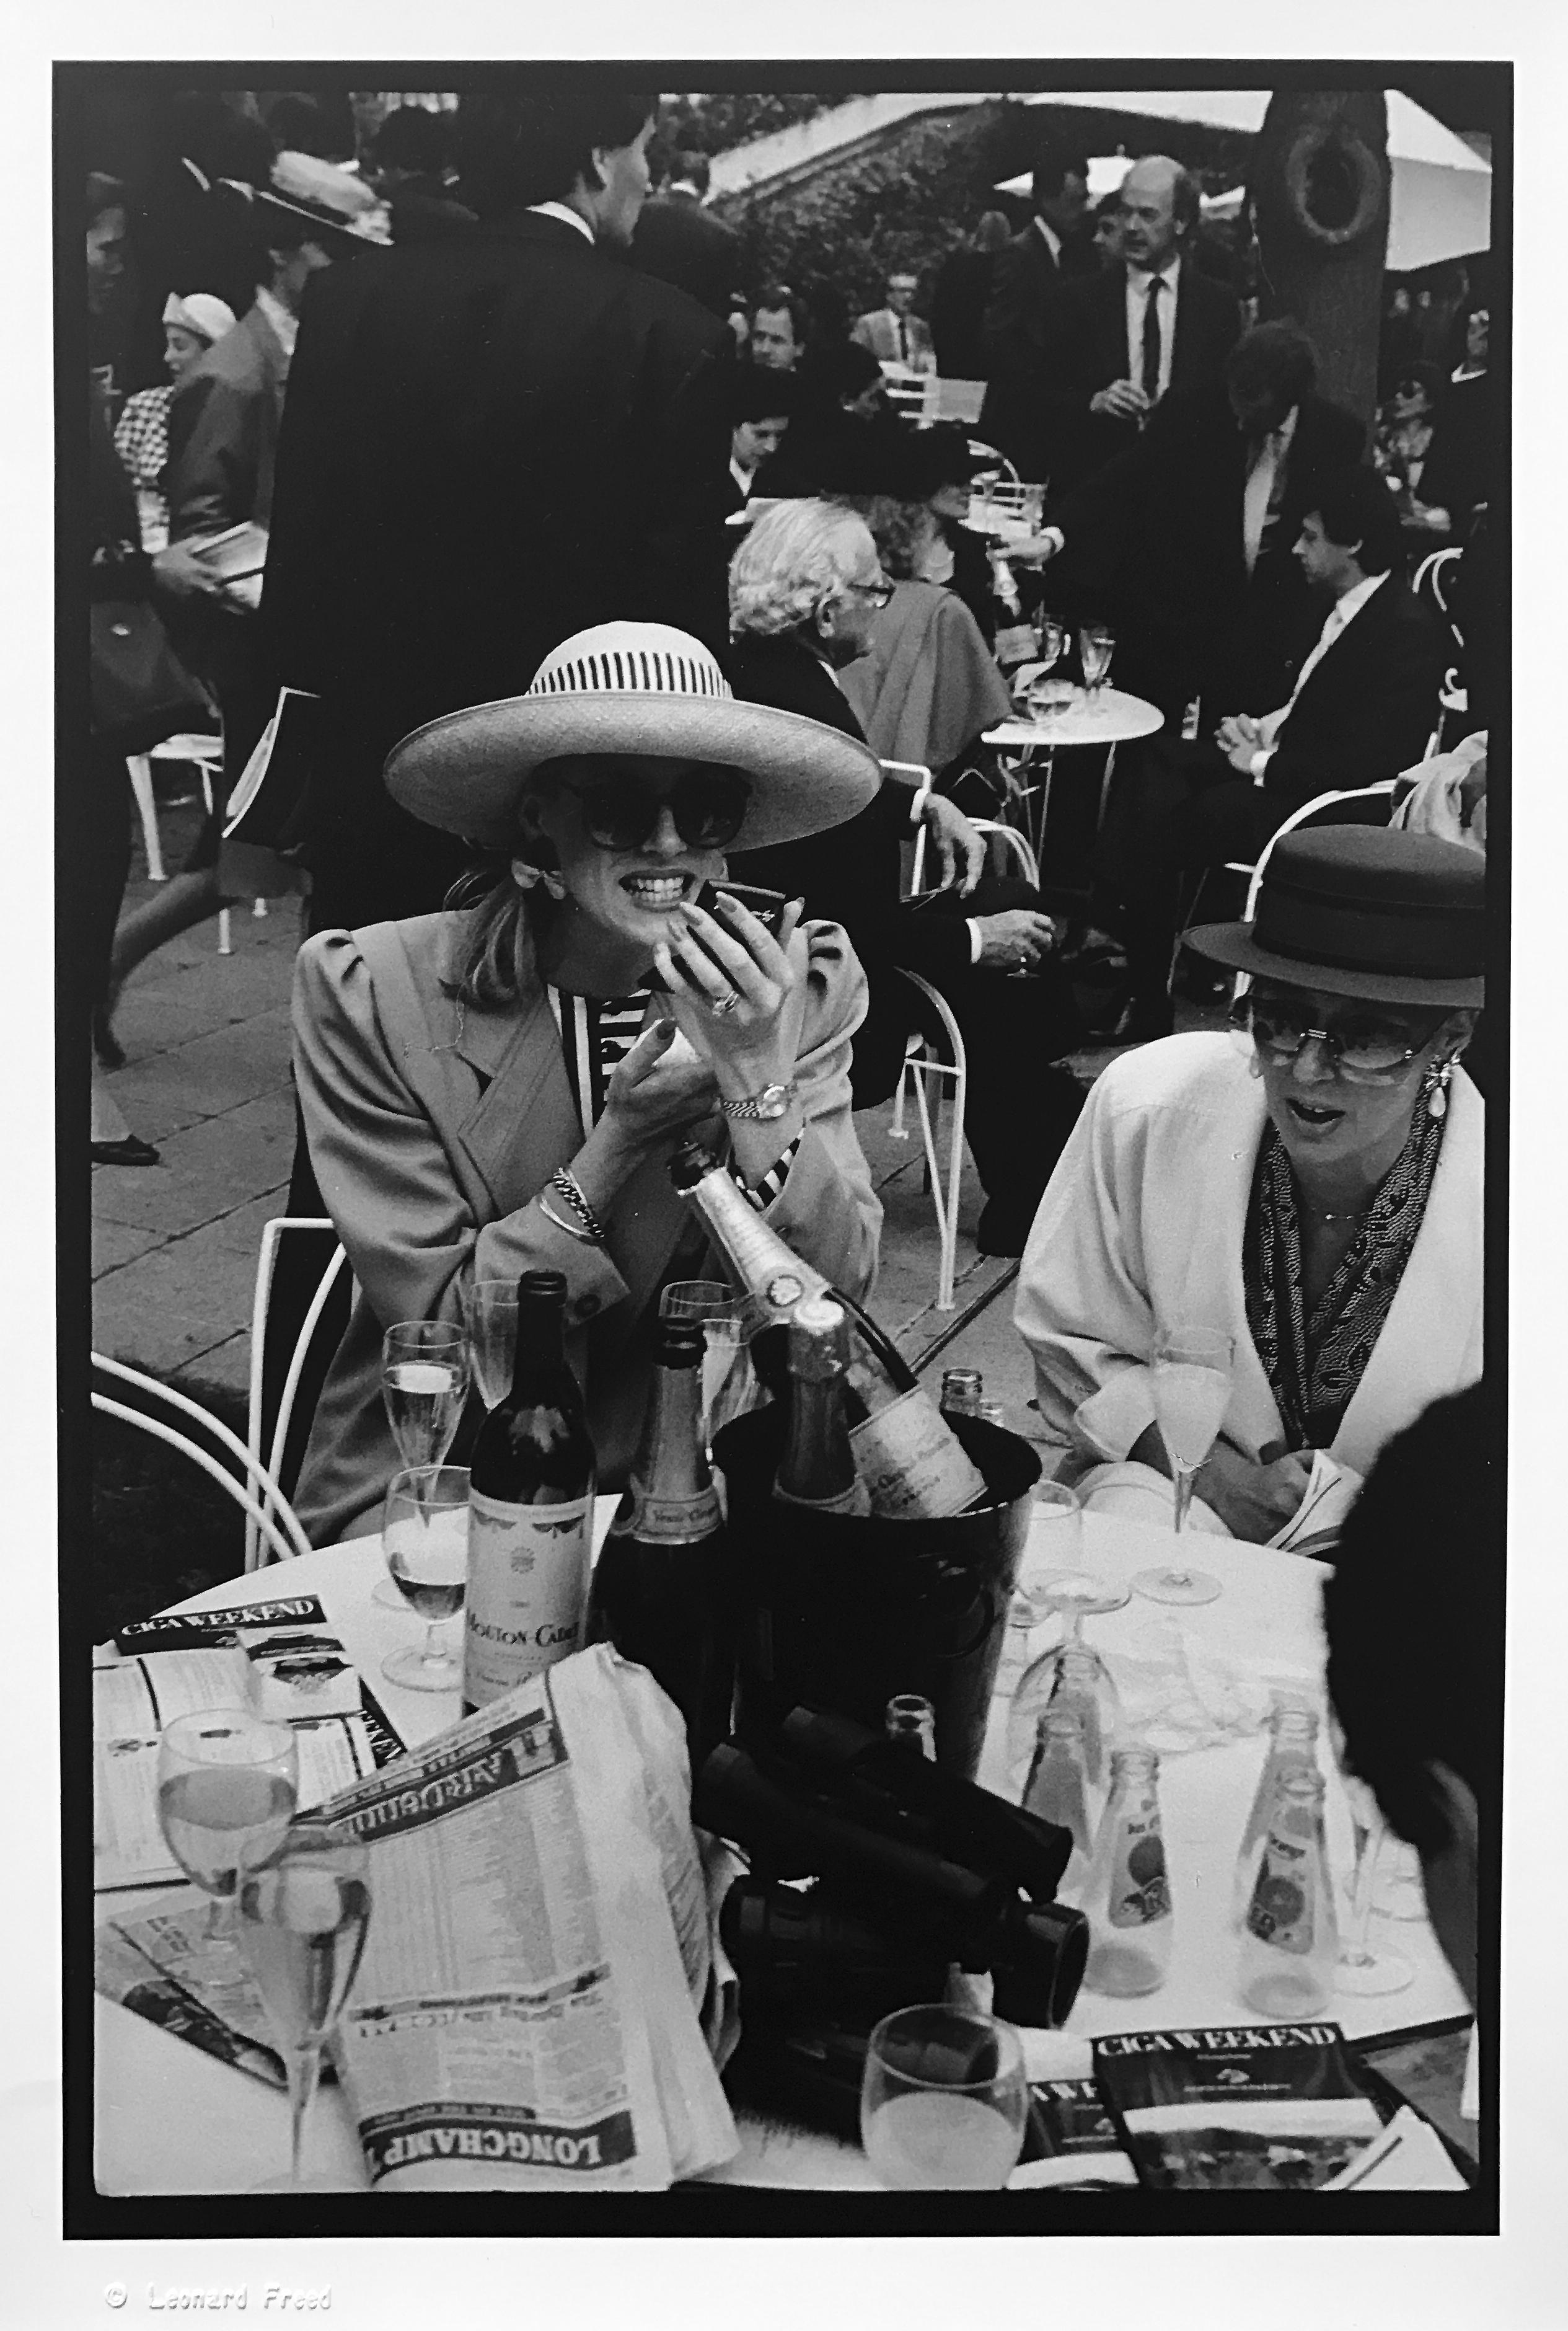 Leonard Freed Portrait Photograph – Paris Longchamp, Vintage Schwarz-Weiß-Fotografie der Pariser Elite 1980er Jahre